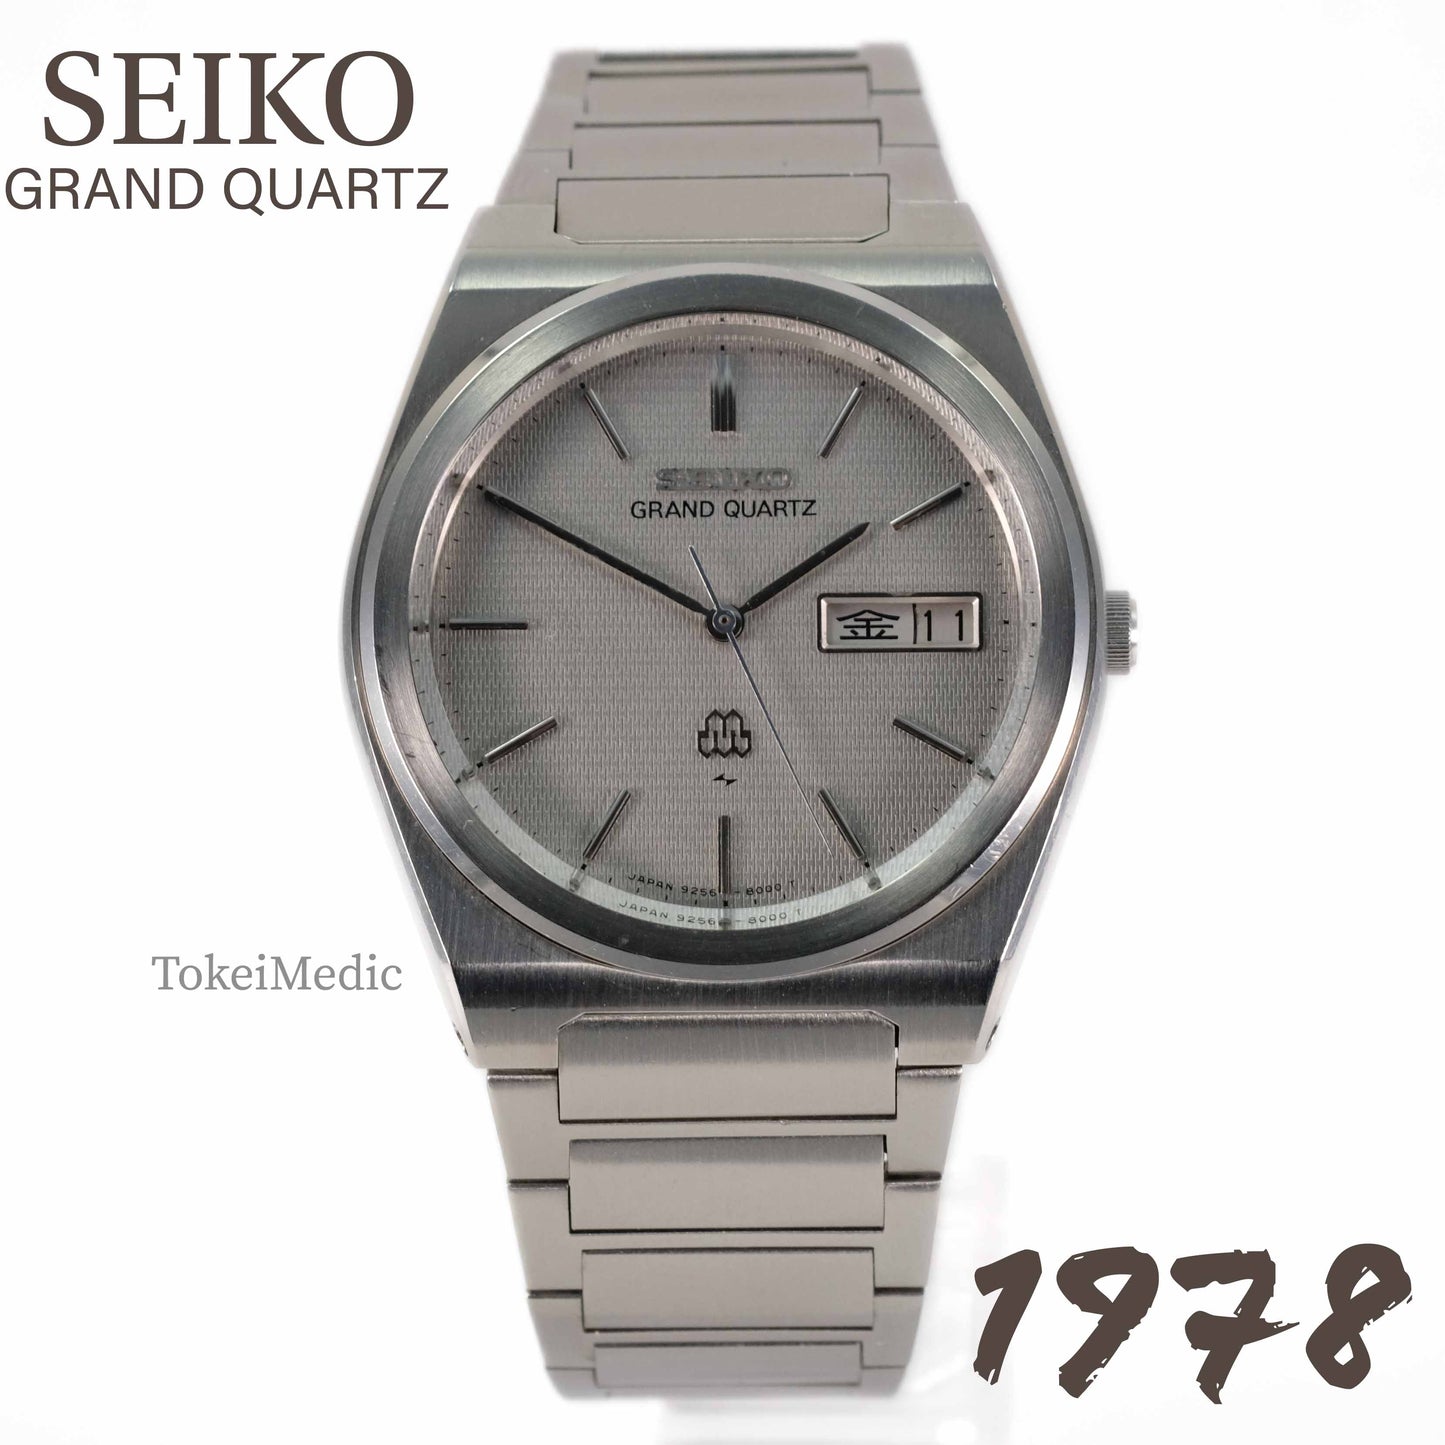 1978 Seiko Grand Quartz 9256-8010